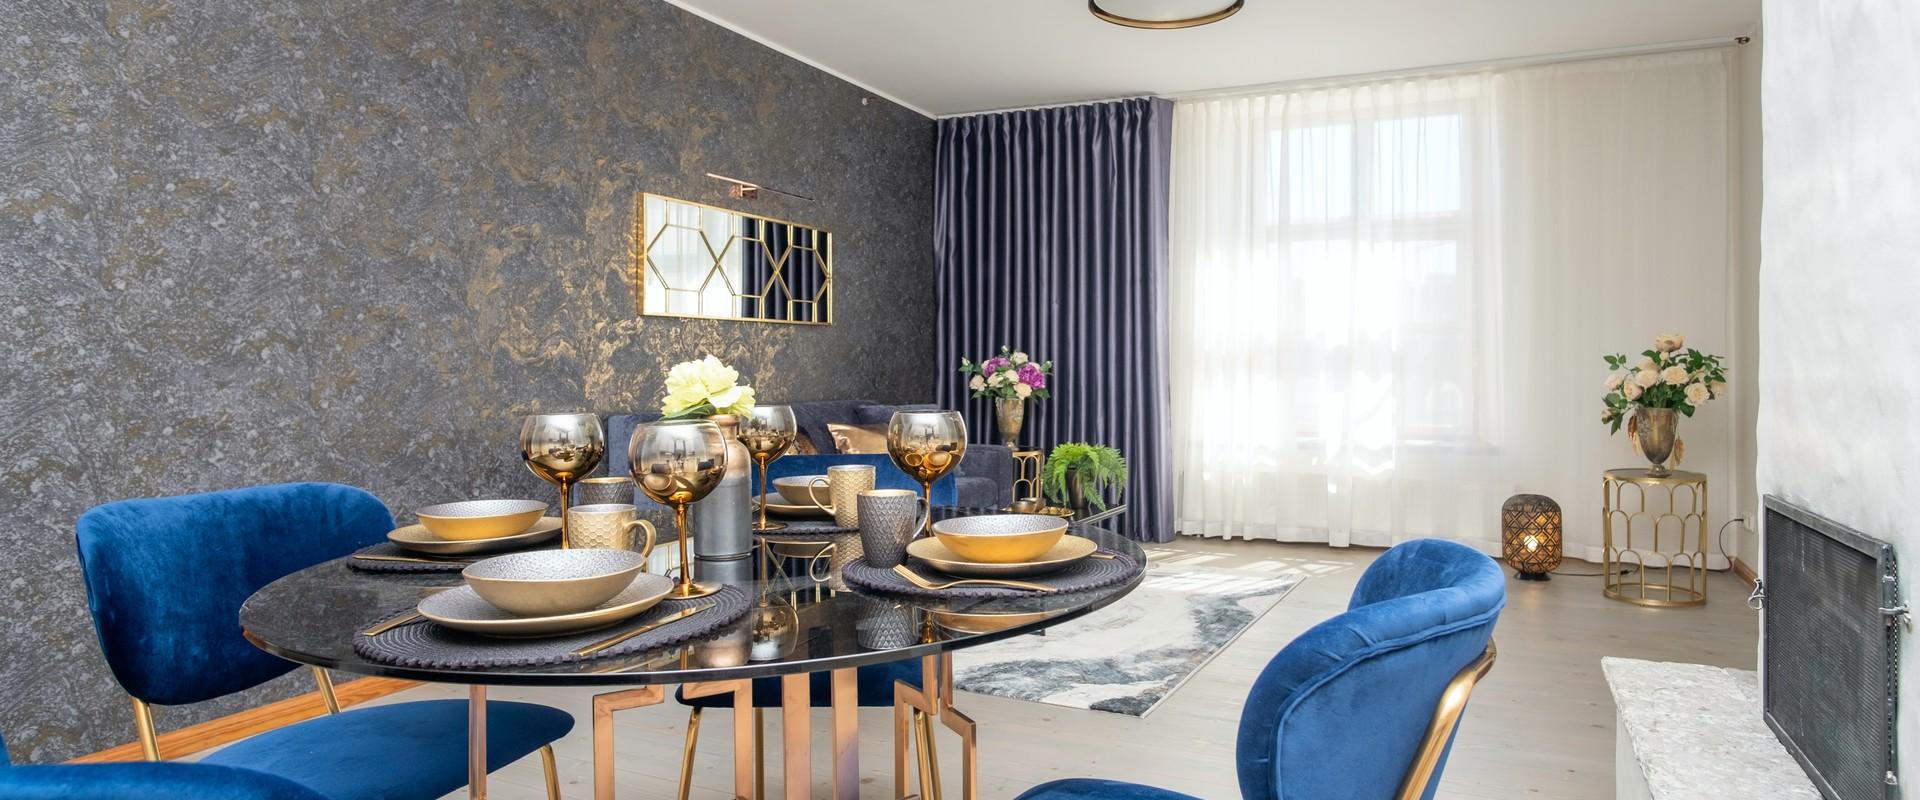 Rataskaevu Boutique Apartments  - luksusa apartamenti ar pirti un kamīnu vecpilsētā